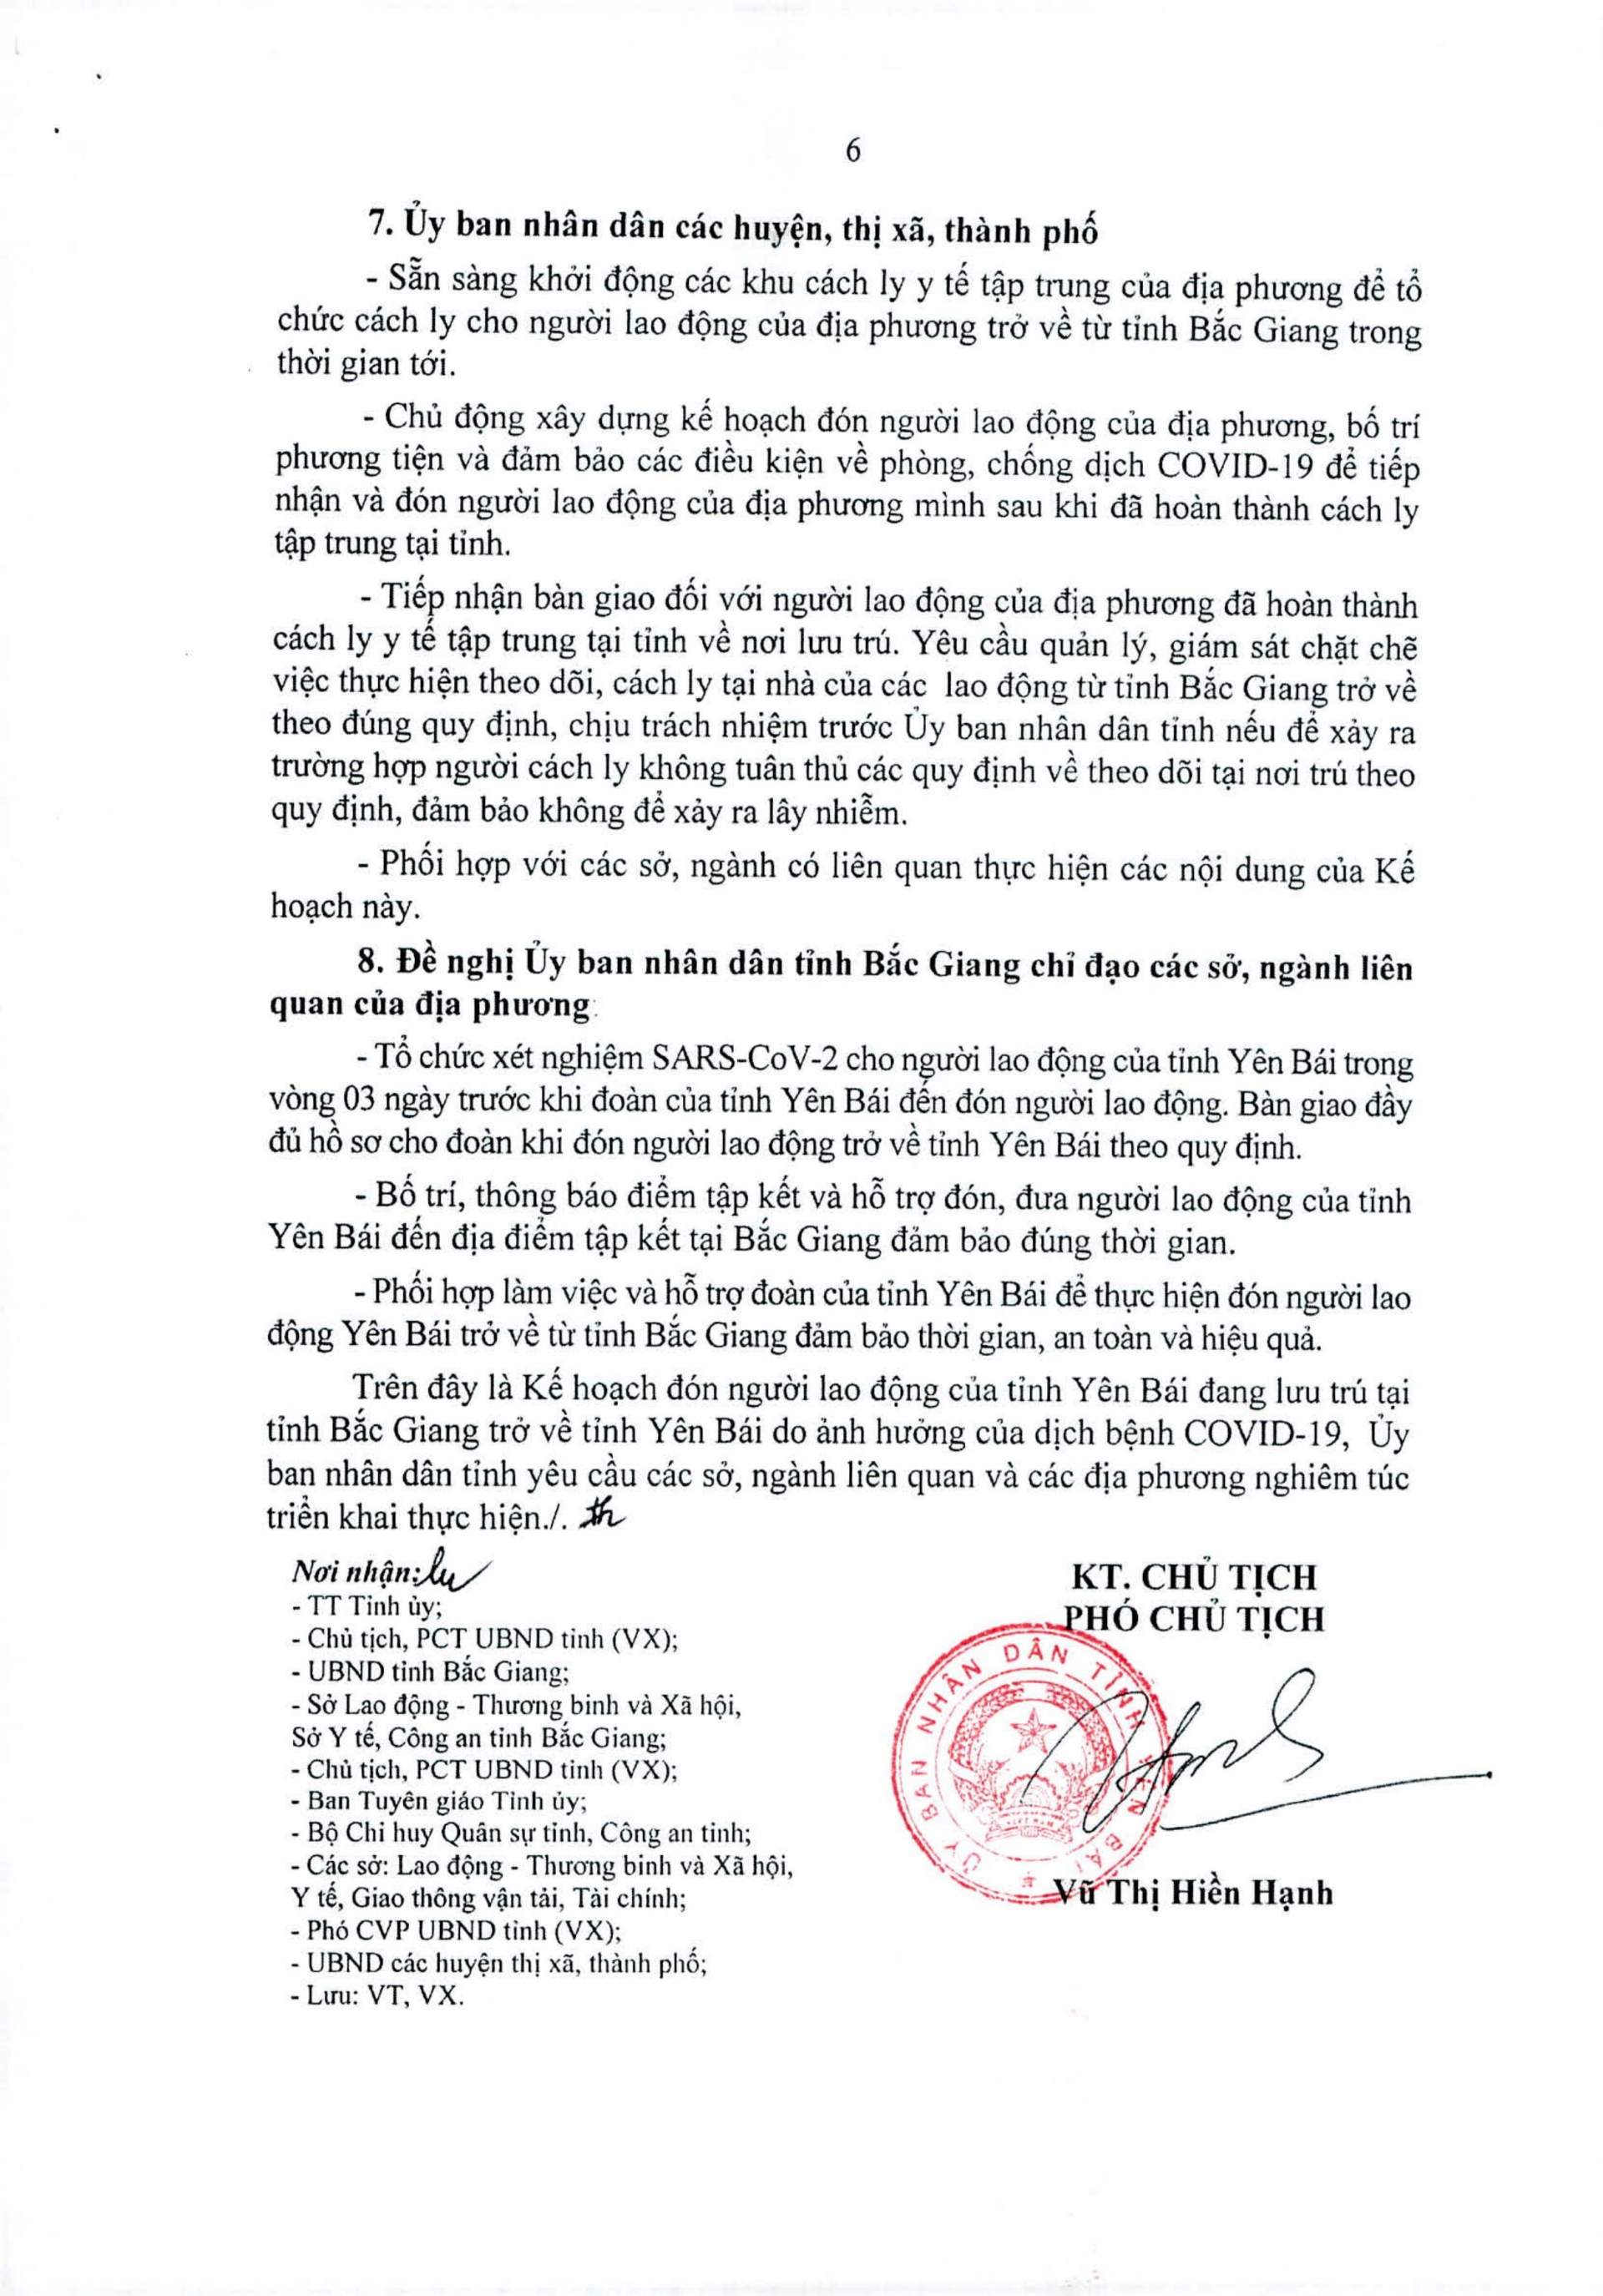 Kế hoạch đón người lao động tỉnh Yên Bái đang lưu trú tại Bắc Giang trở về địa phương do ảnh hưởng của dịch COVID -19